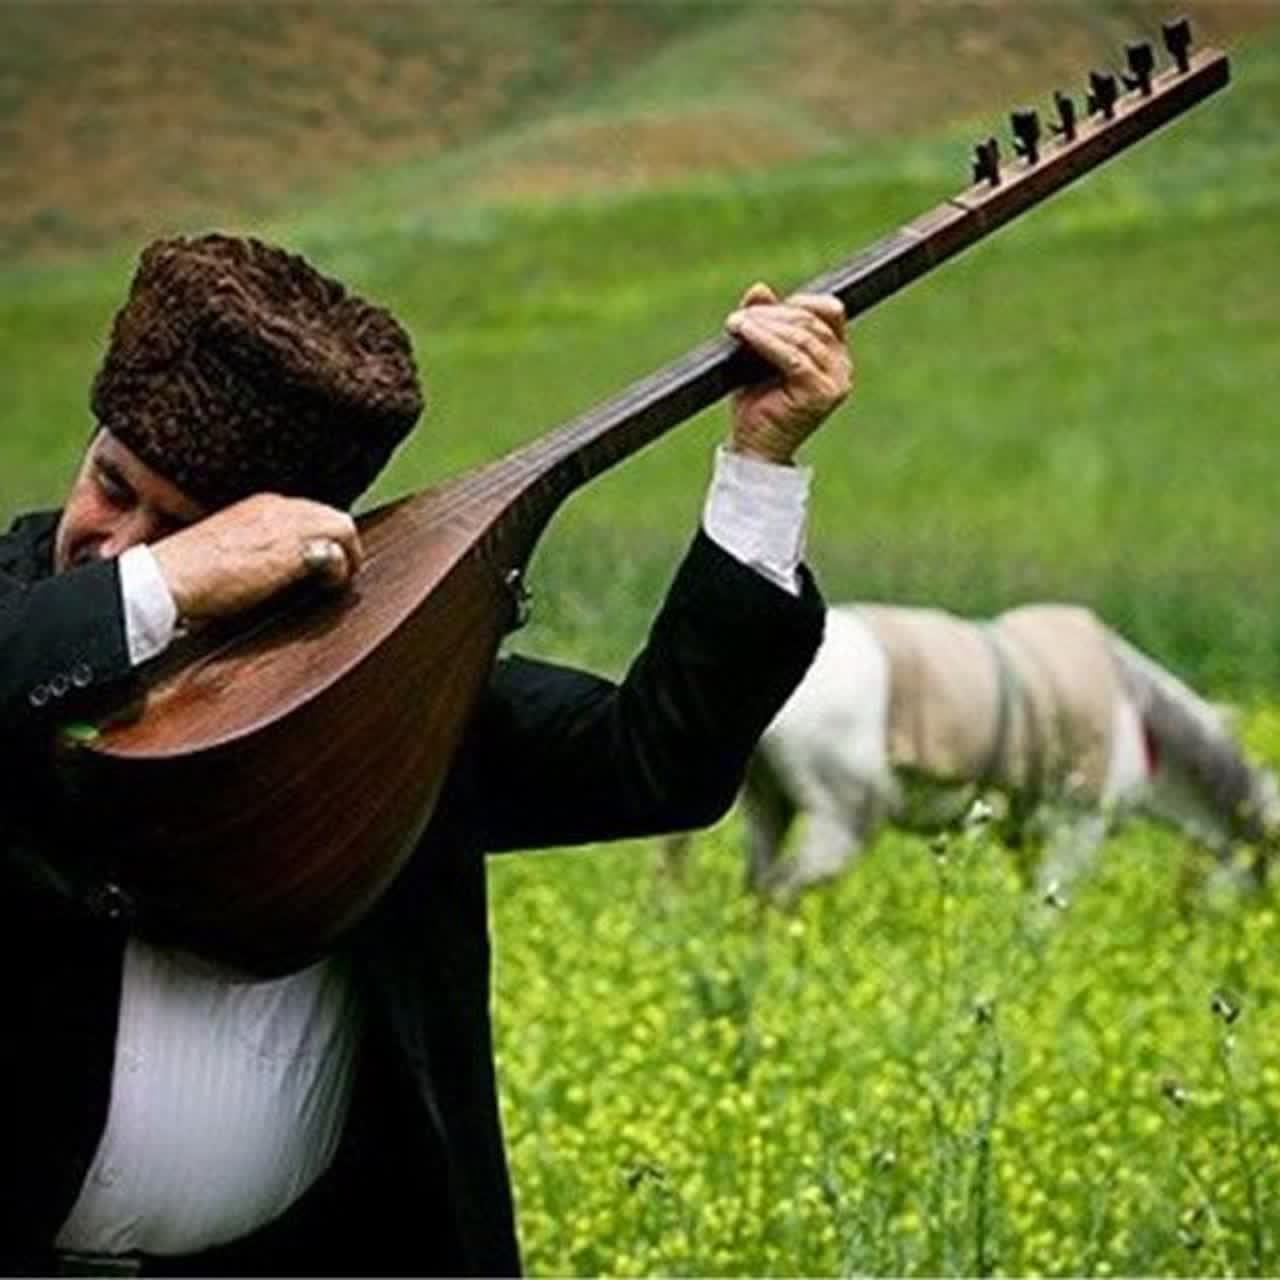 موسیقی ایران